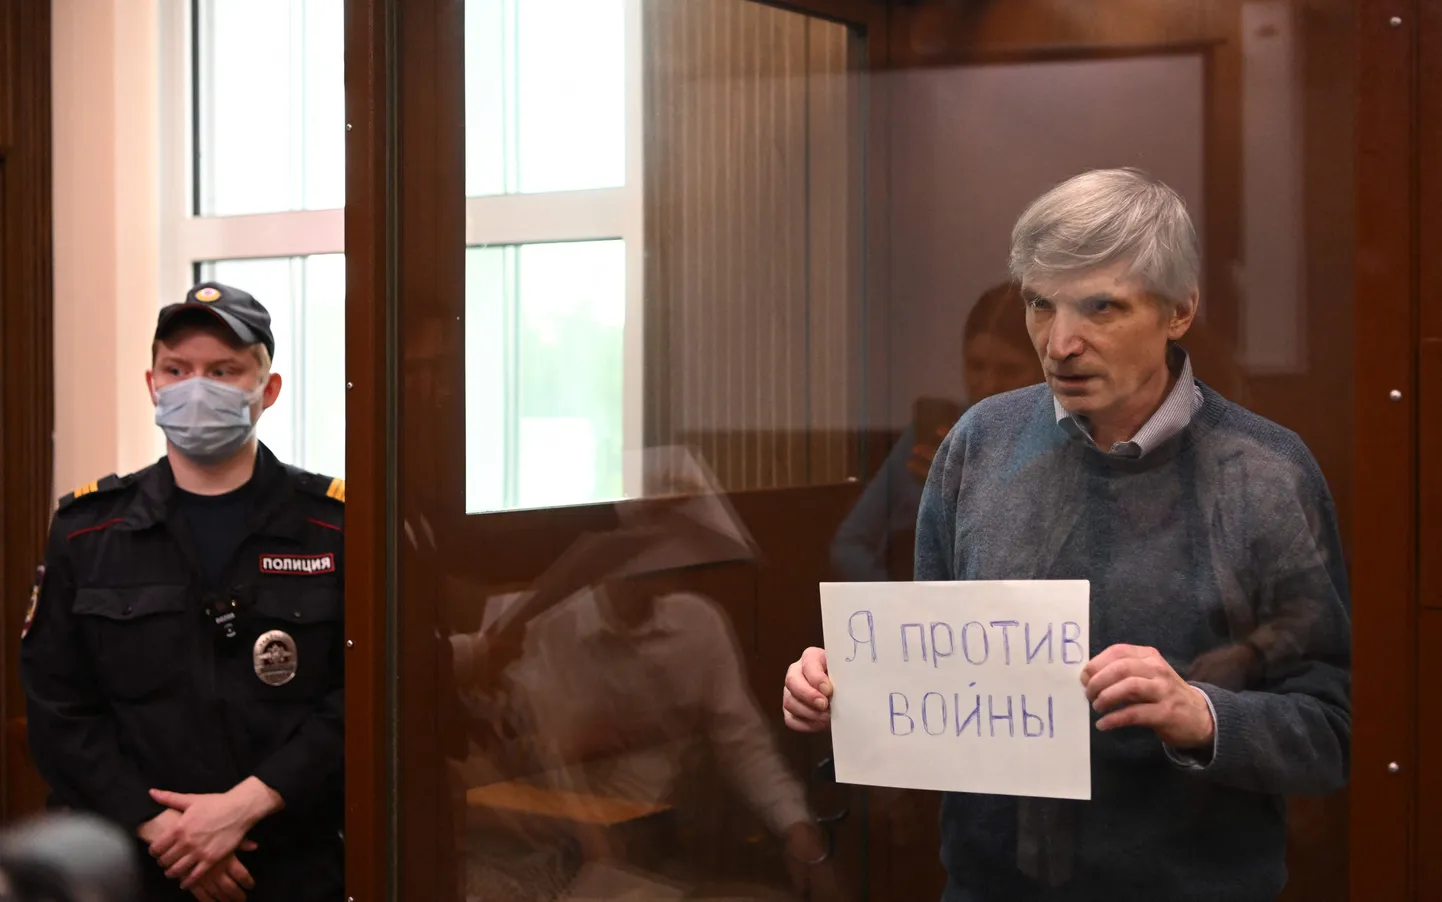 Moskva linnavolinik Aleksei Gorinov kohtus.